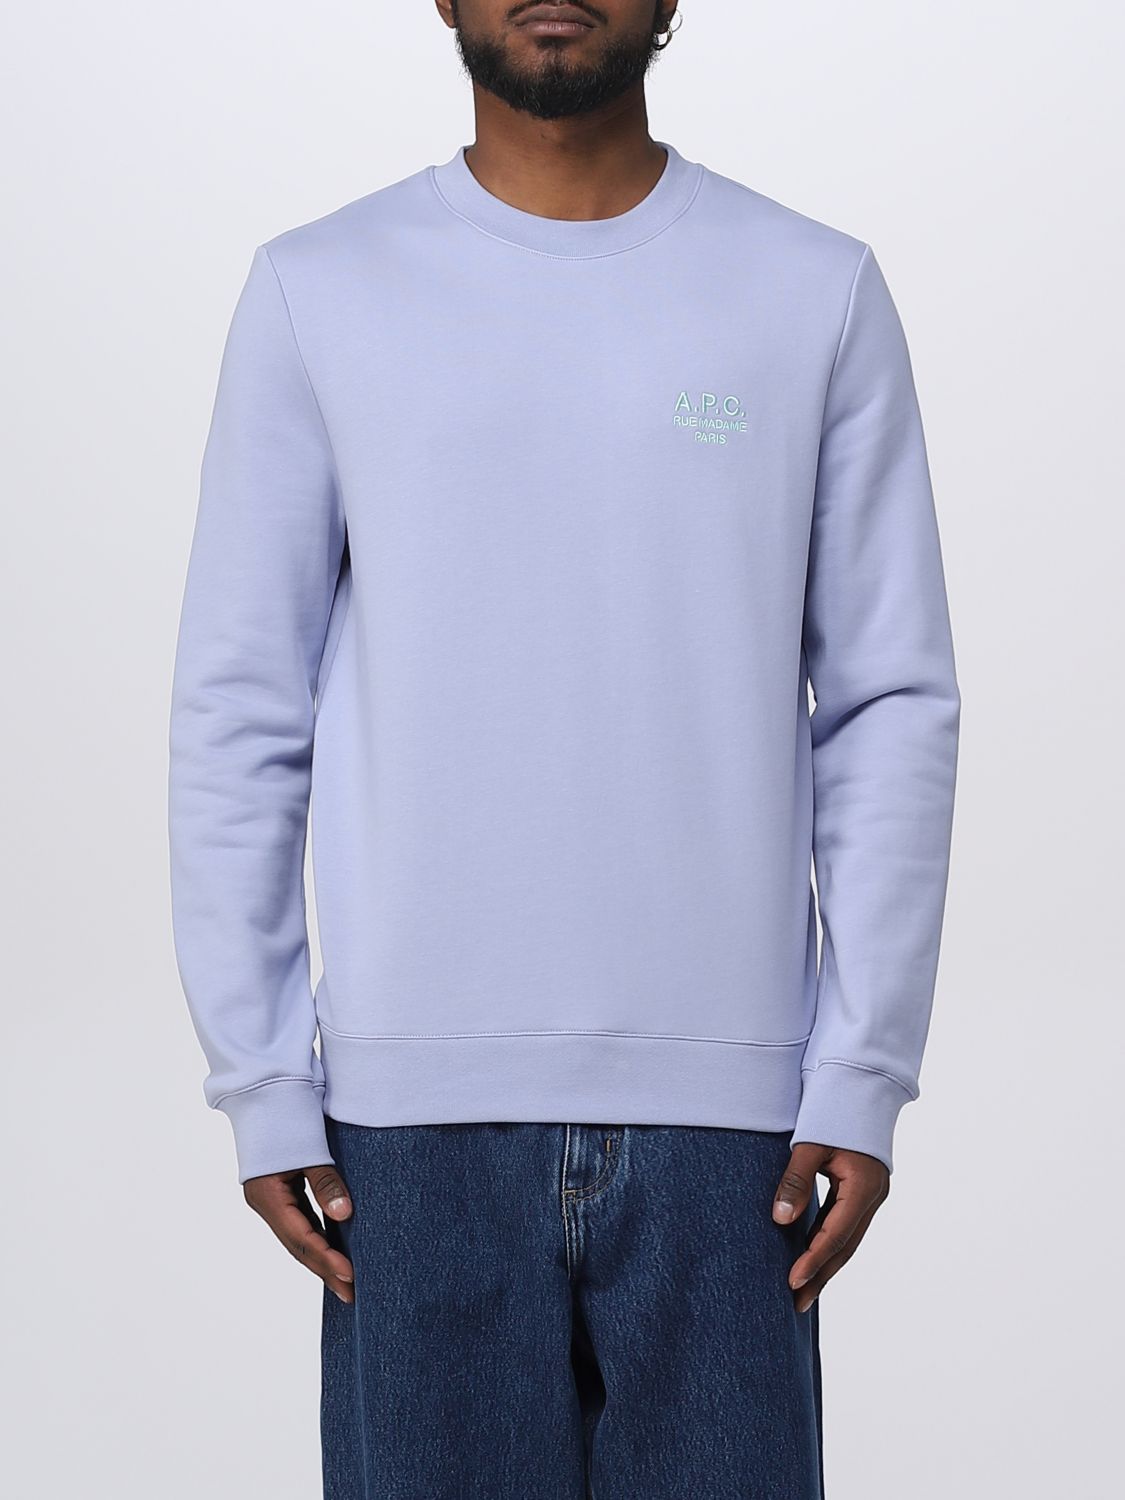 Shop Apc Sweatshirt A.p.c. Men Color Lilac